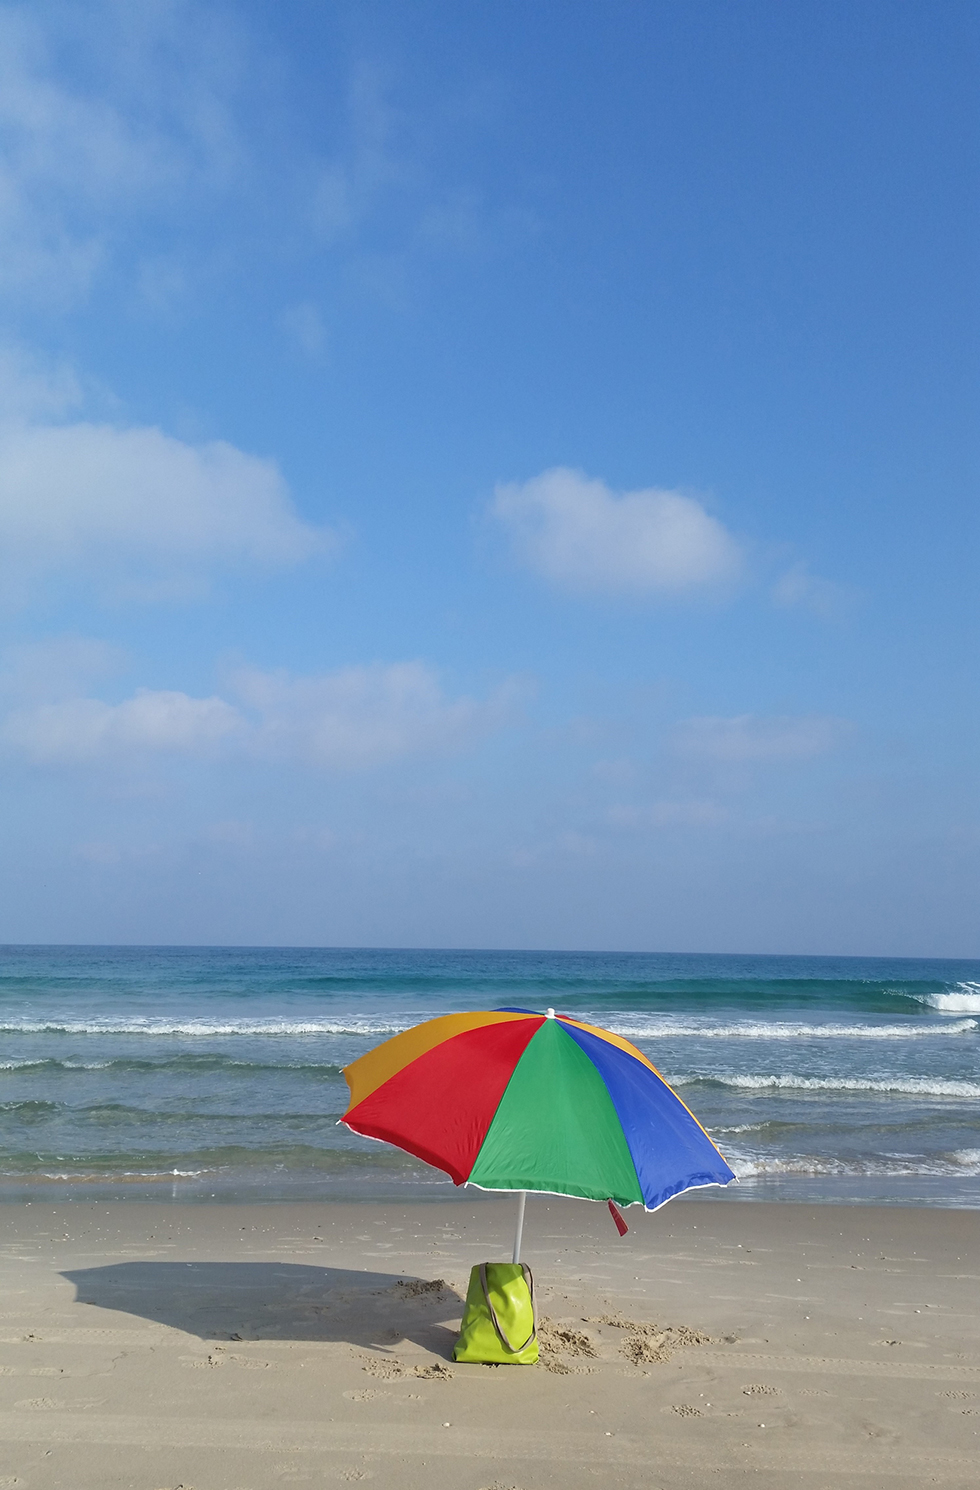 שמש, מים ושמיים בחוף מעגן מיכאל (צילום: בועז דרור) (צילום: בועז דרור)